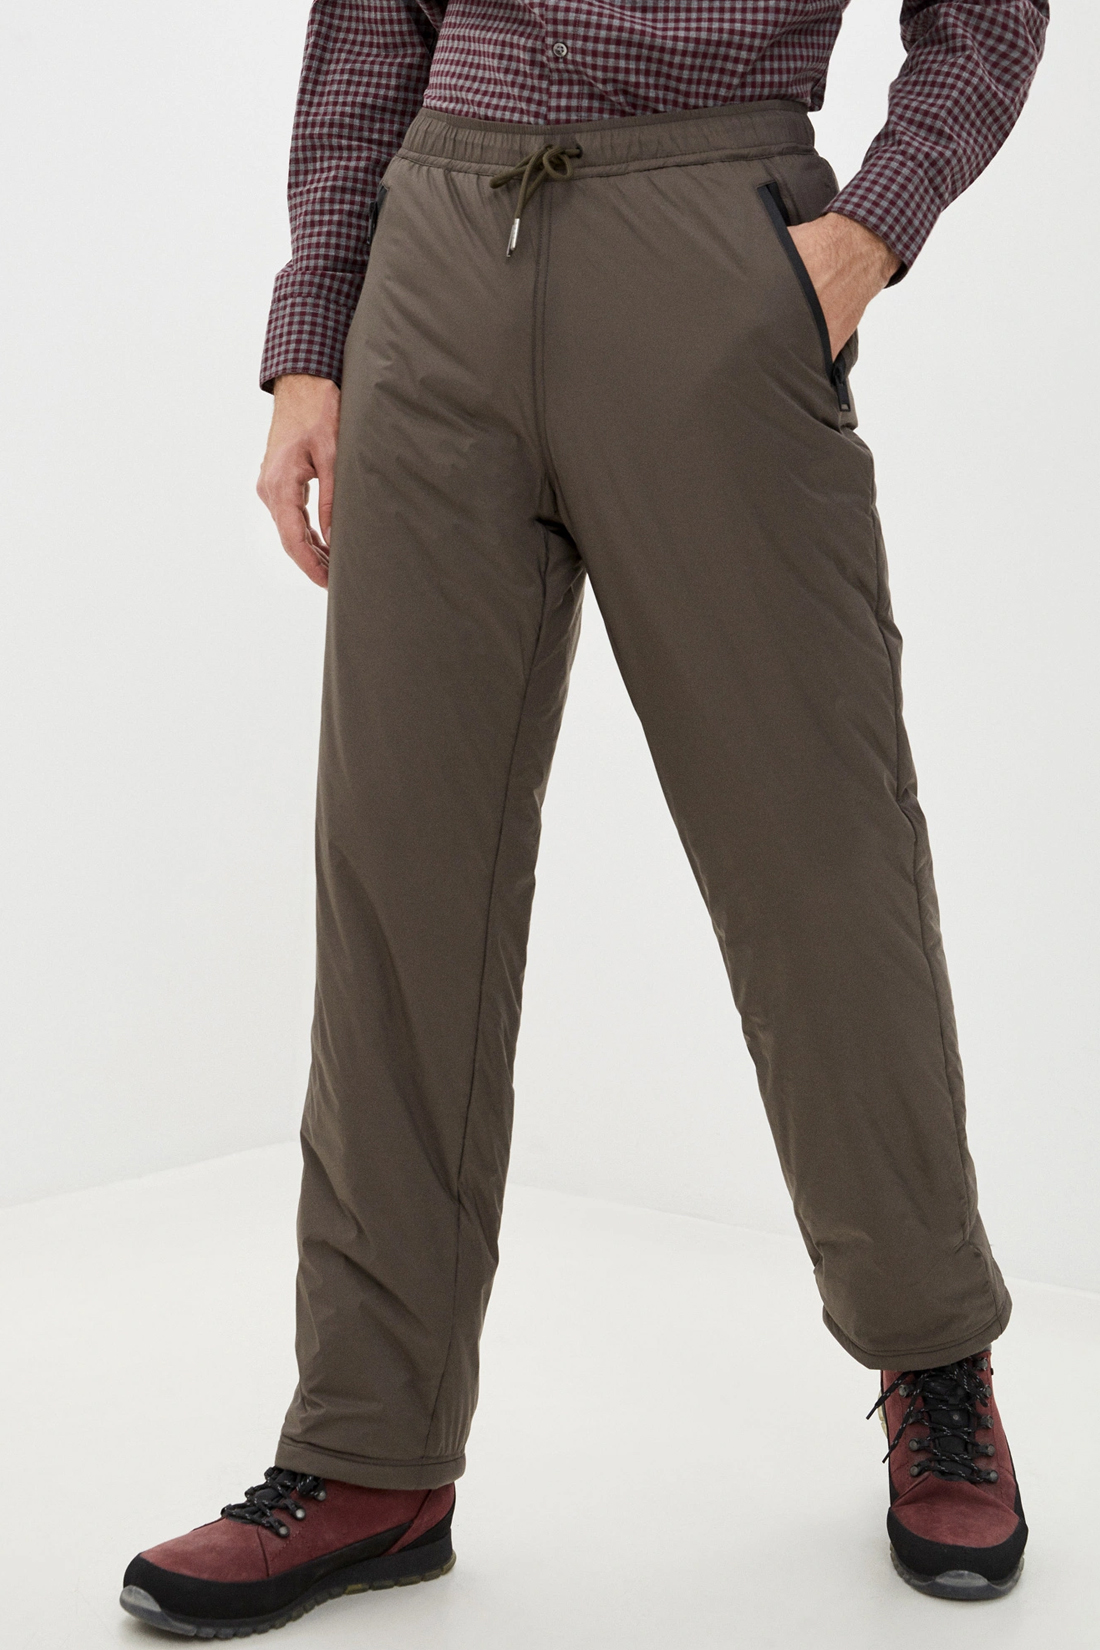 Утеплённые брюки (арт. baon B590505), размер XXL, цвет зеленый